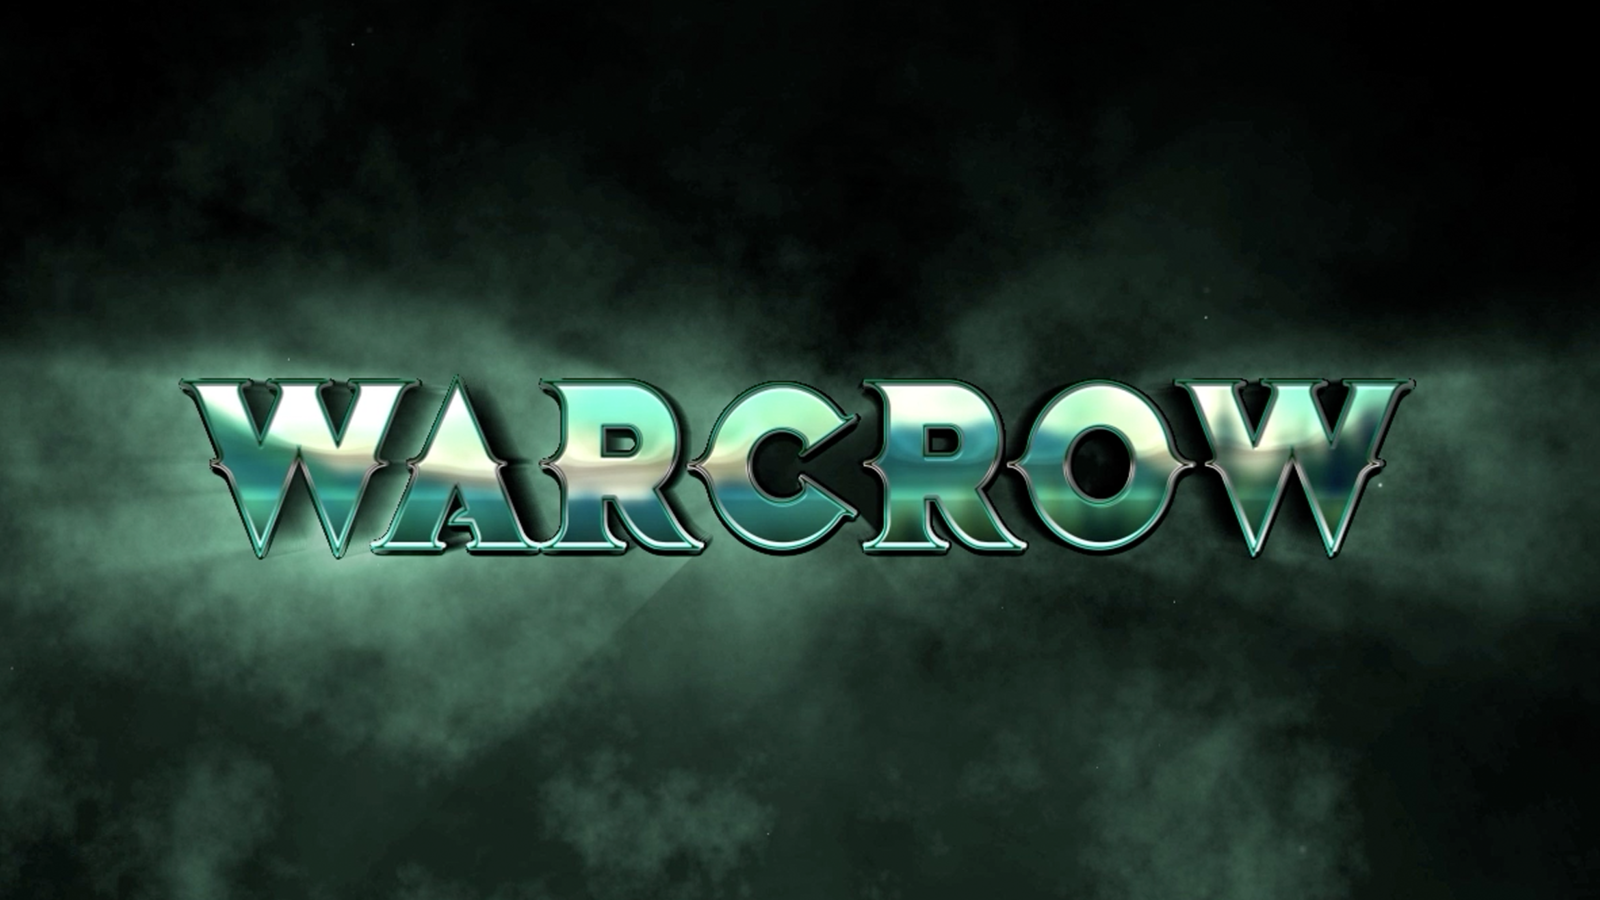 warcrow-announcement-logo-corvus-belli